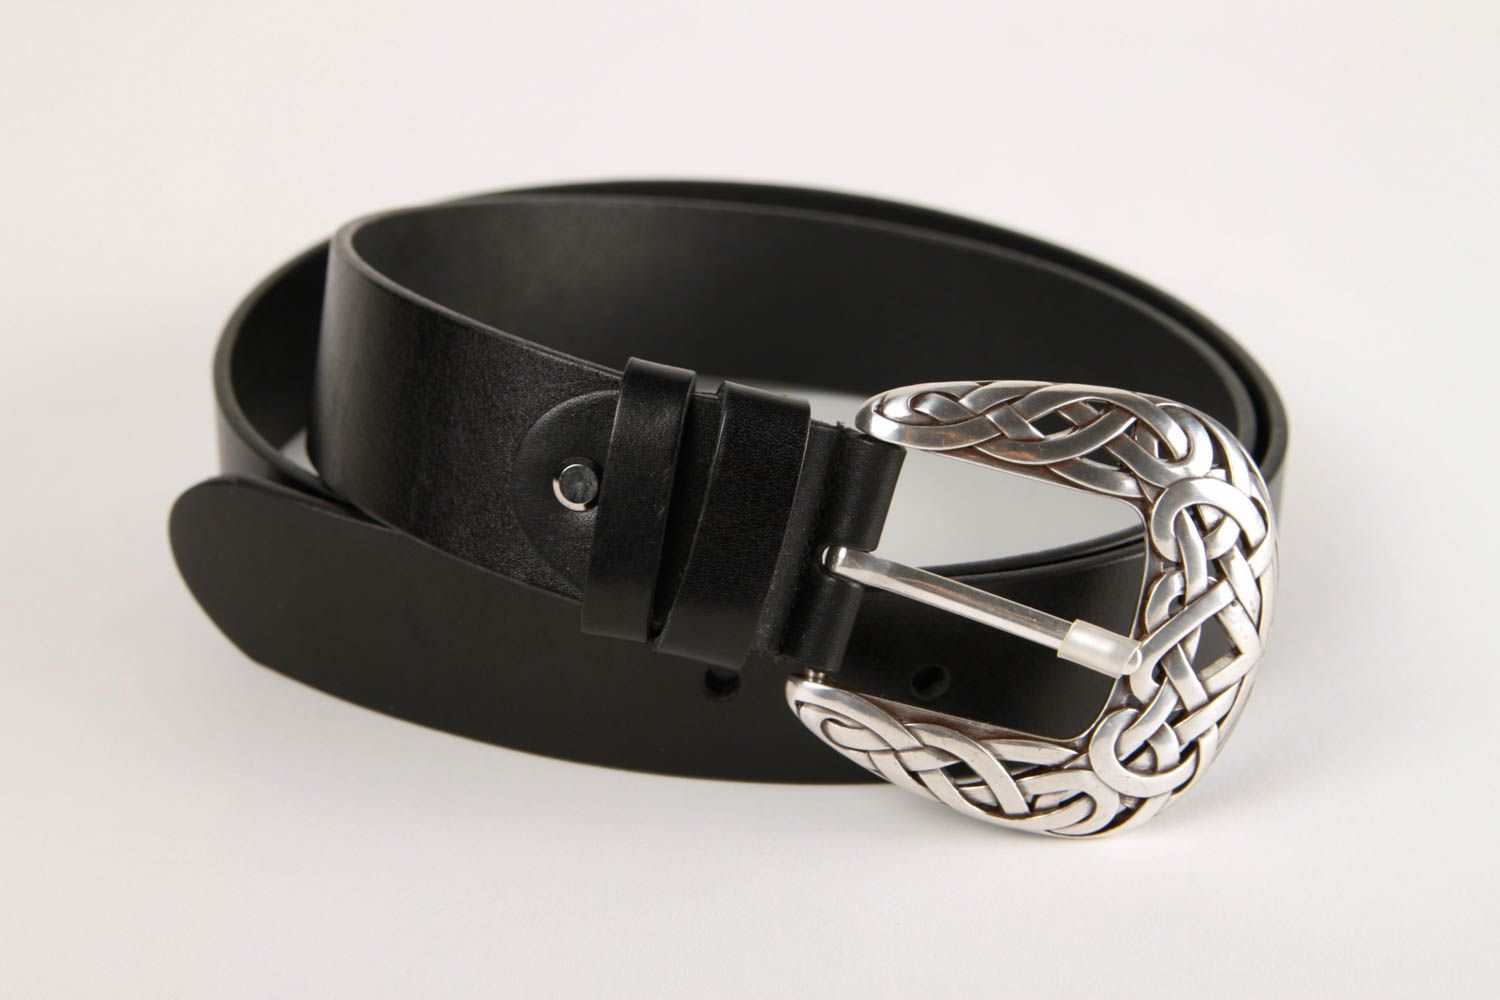 Handmade belt for men leather belt gift ideas unusual belt black belt for men photo 3